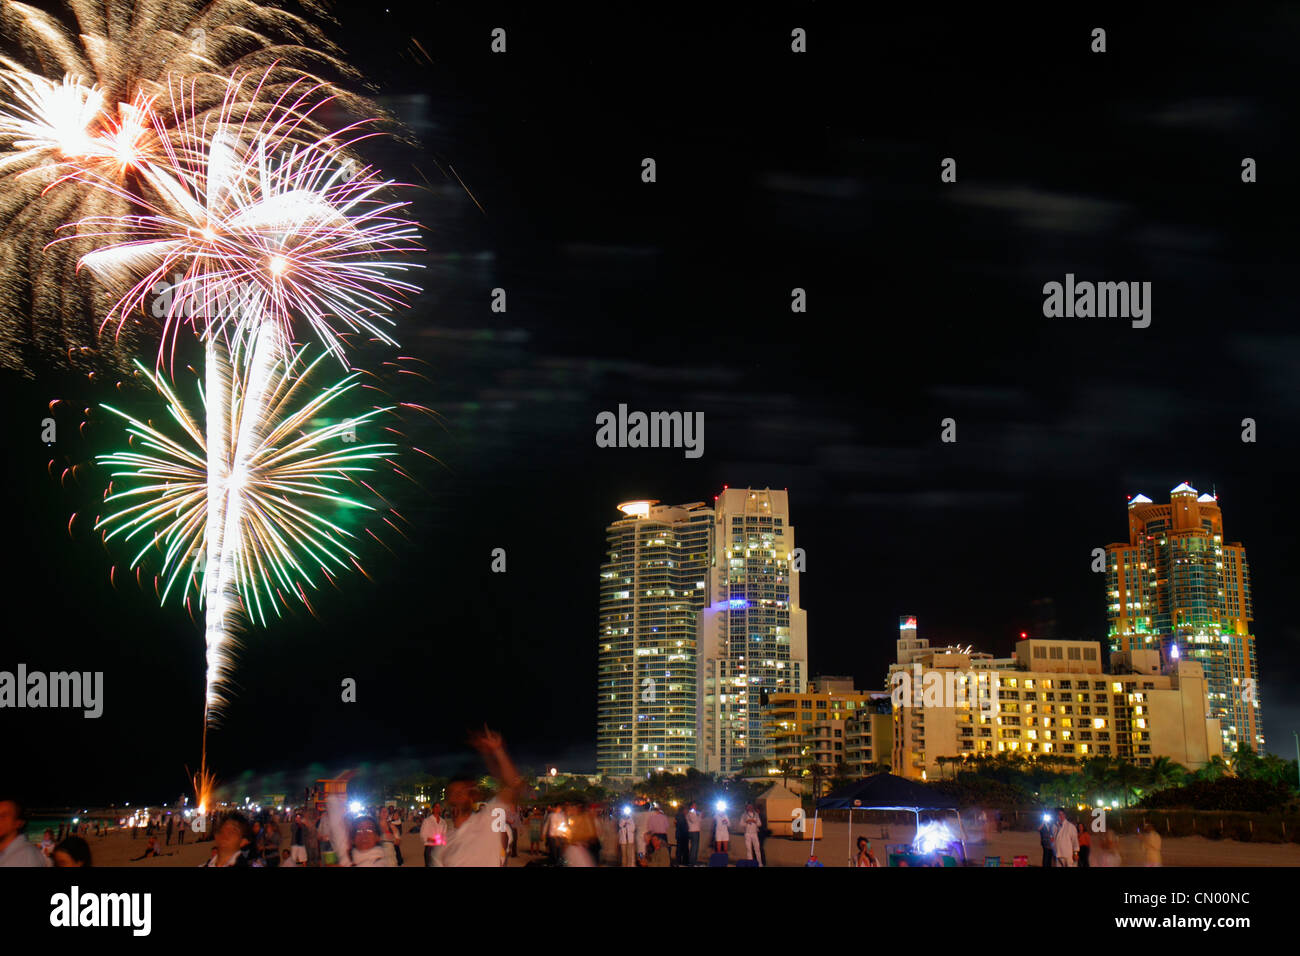 Miami Beach Florida,plage publique,nuit,Portofino,Continuum,High Rise,condominiums,Marriot,hôtel,réveillon du nouvel an,tradition feux d'artifice,FL120101152 Banque D'Images